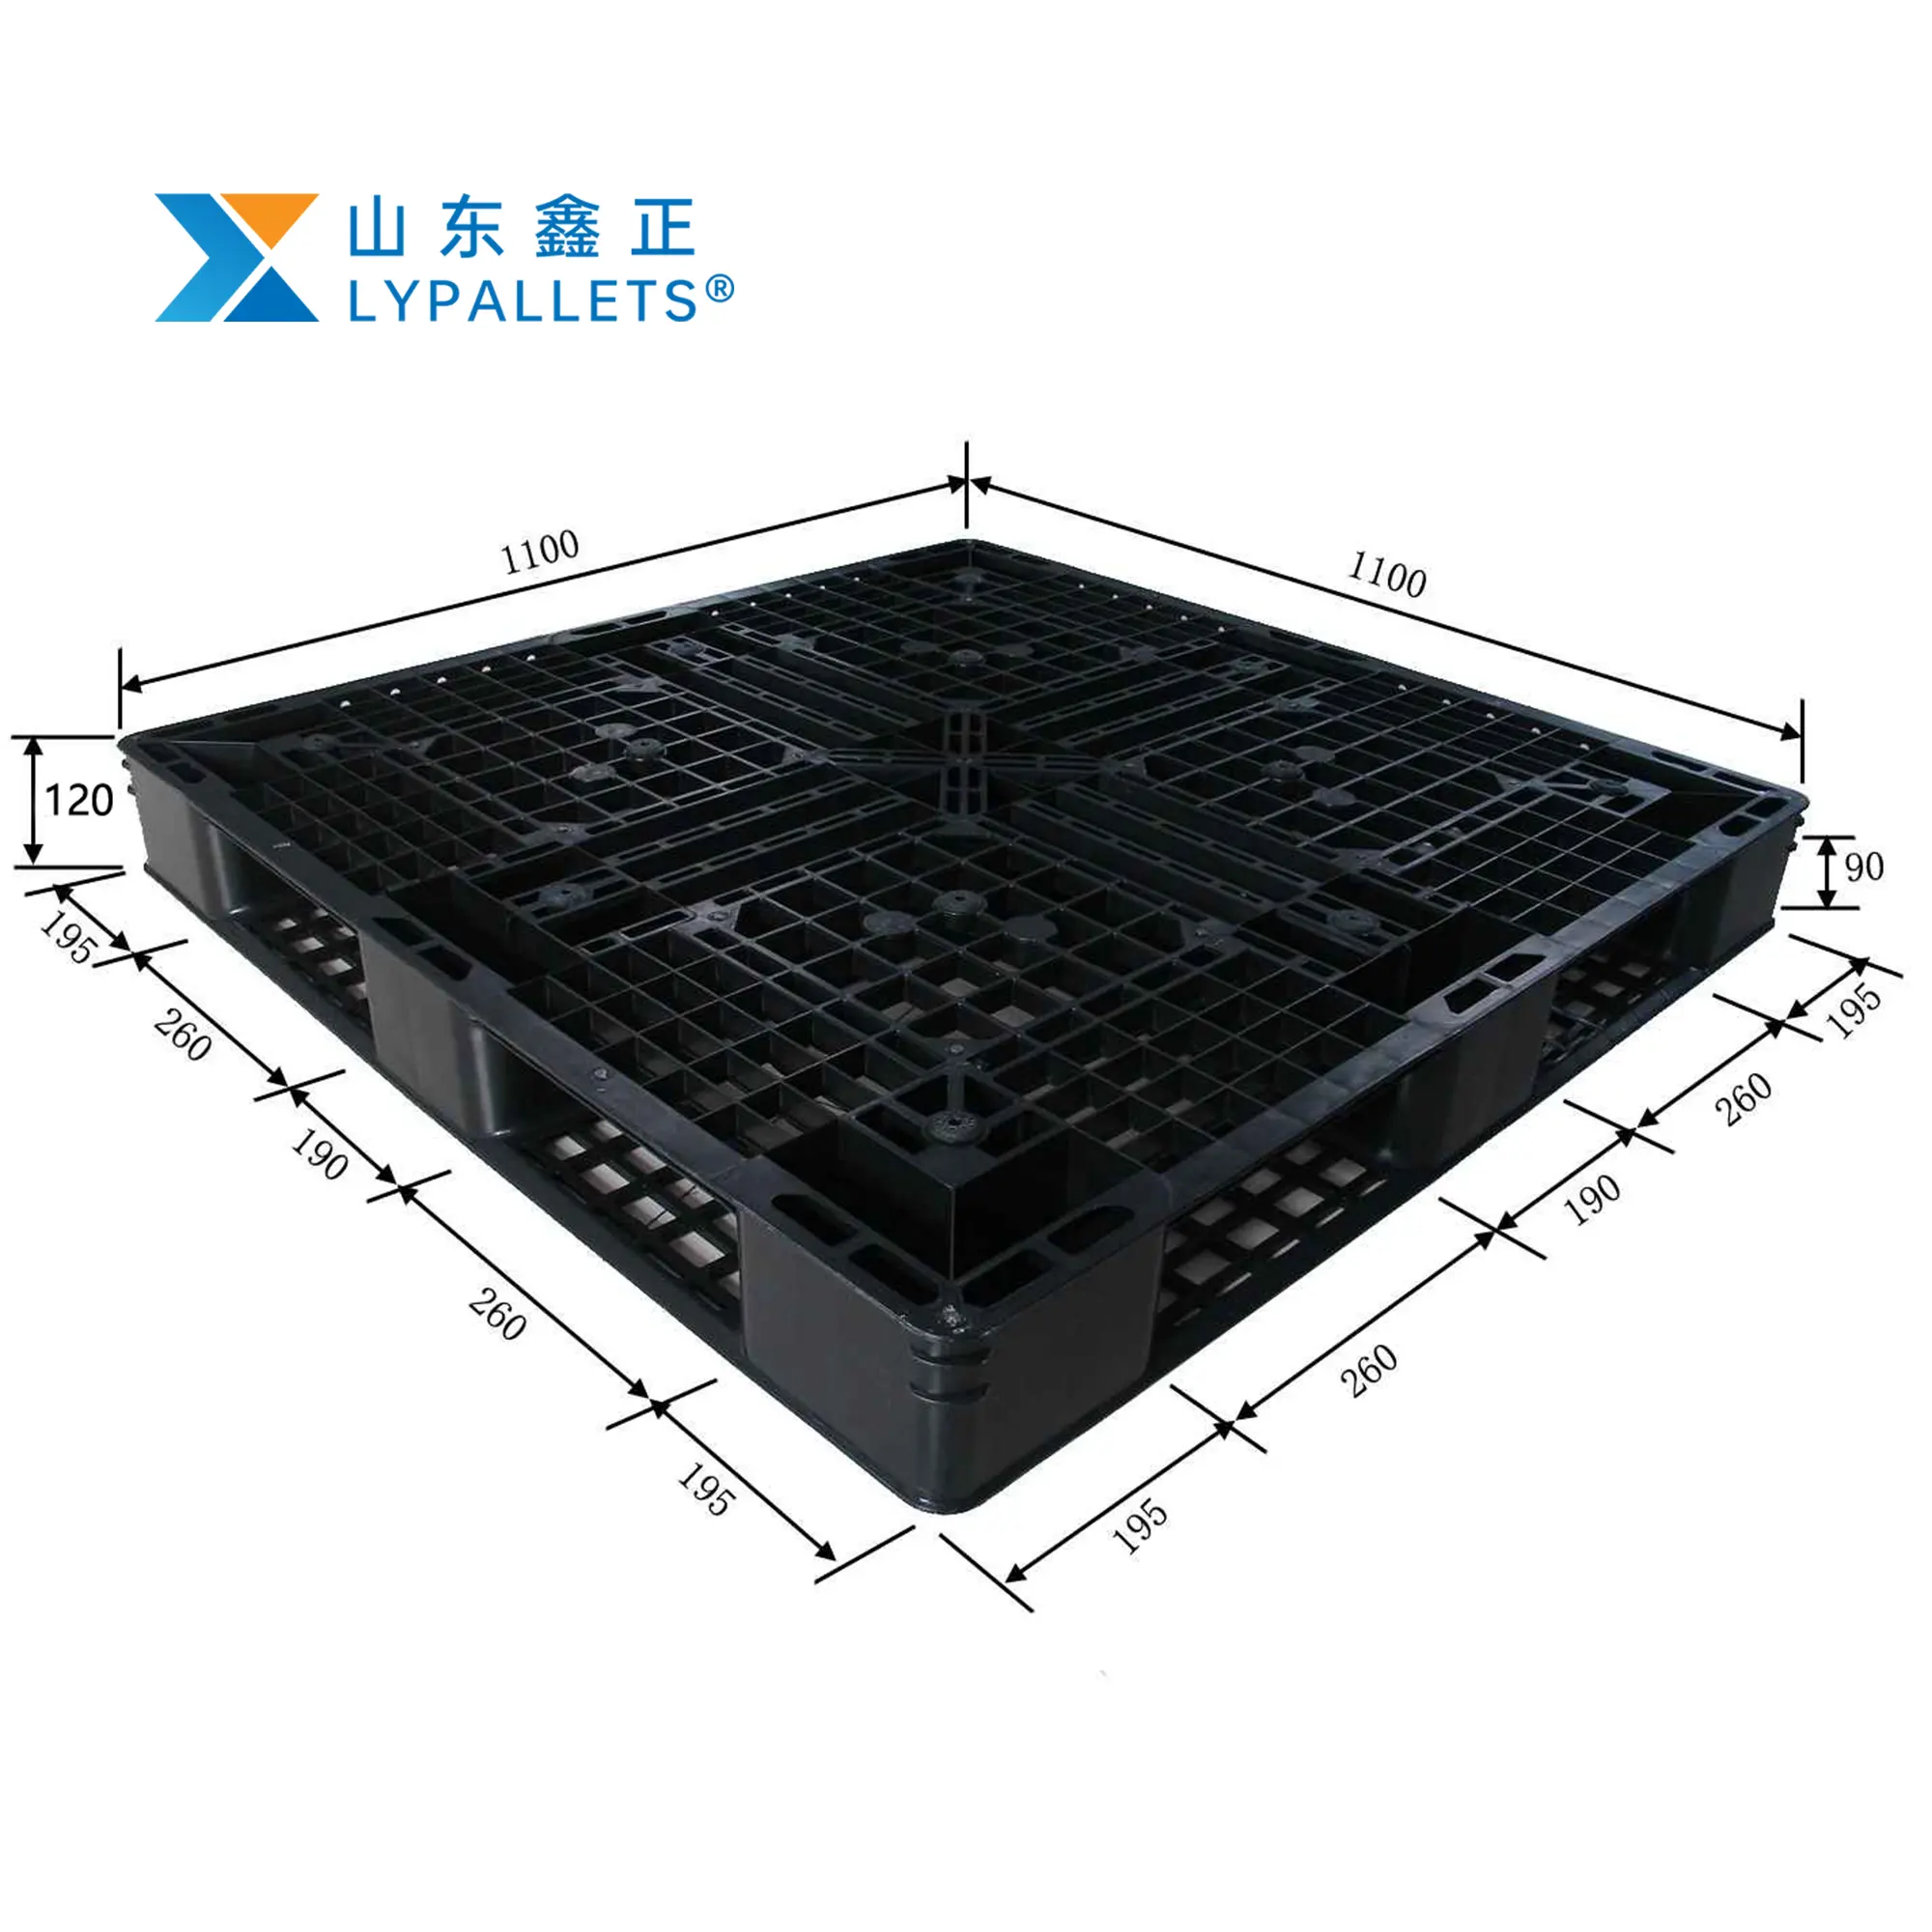 סיטונאי פלטות 1100x1100 משטח פלסטיק שחור hdpe ניתן לערום תעשייתי חד כיווני יצוא משטח פלסטיק עם המחיר הטוב ביותר